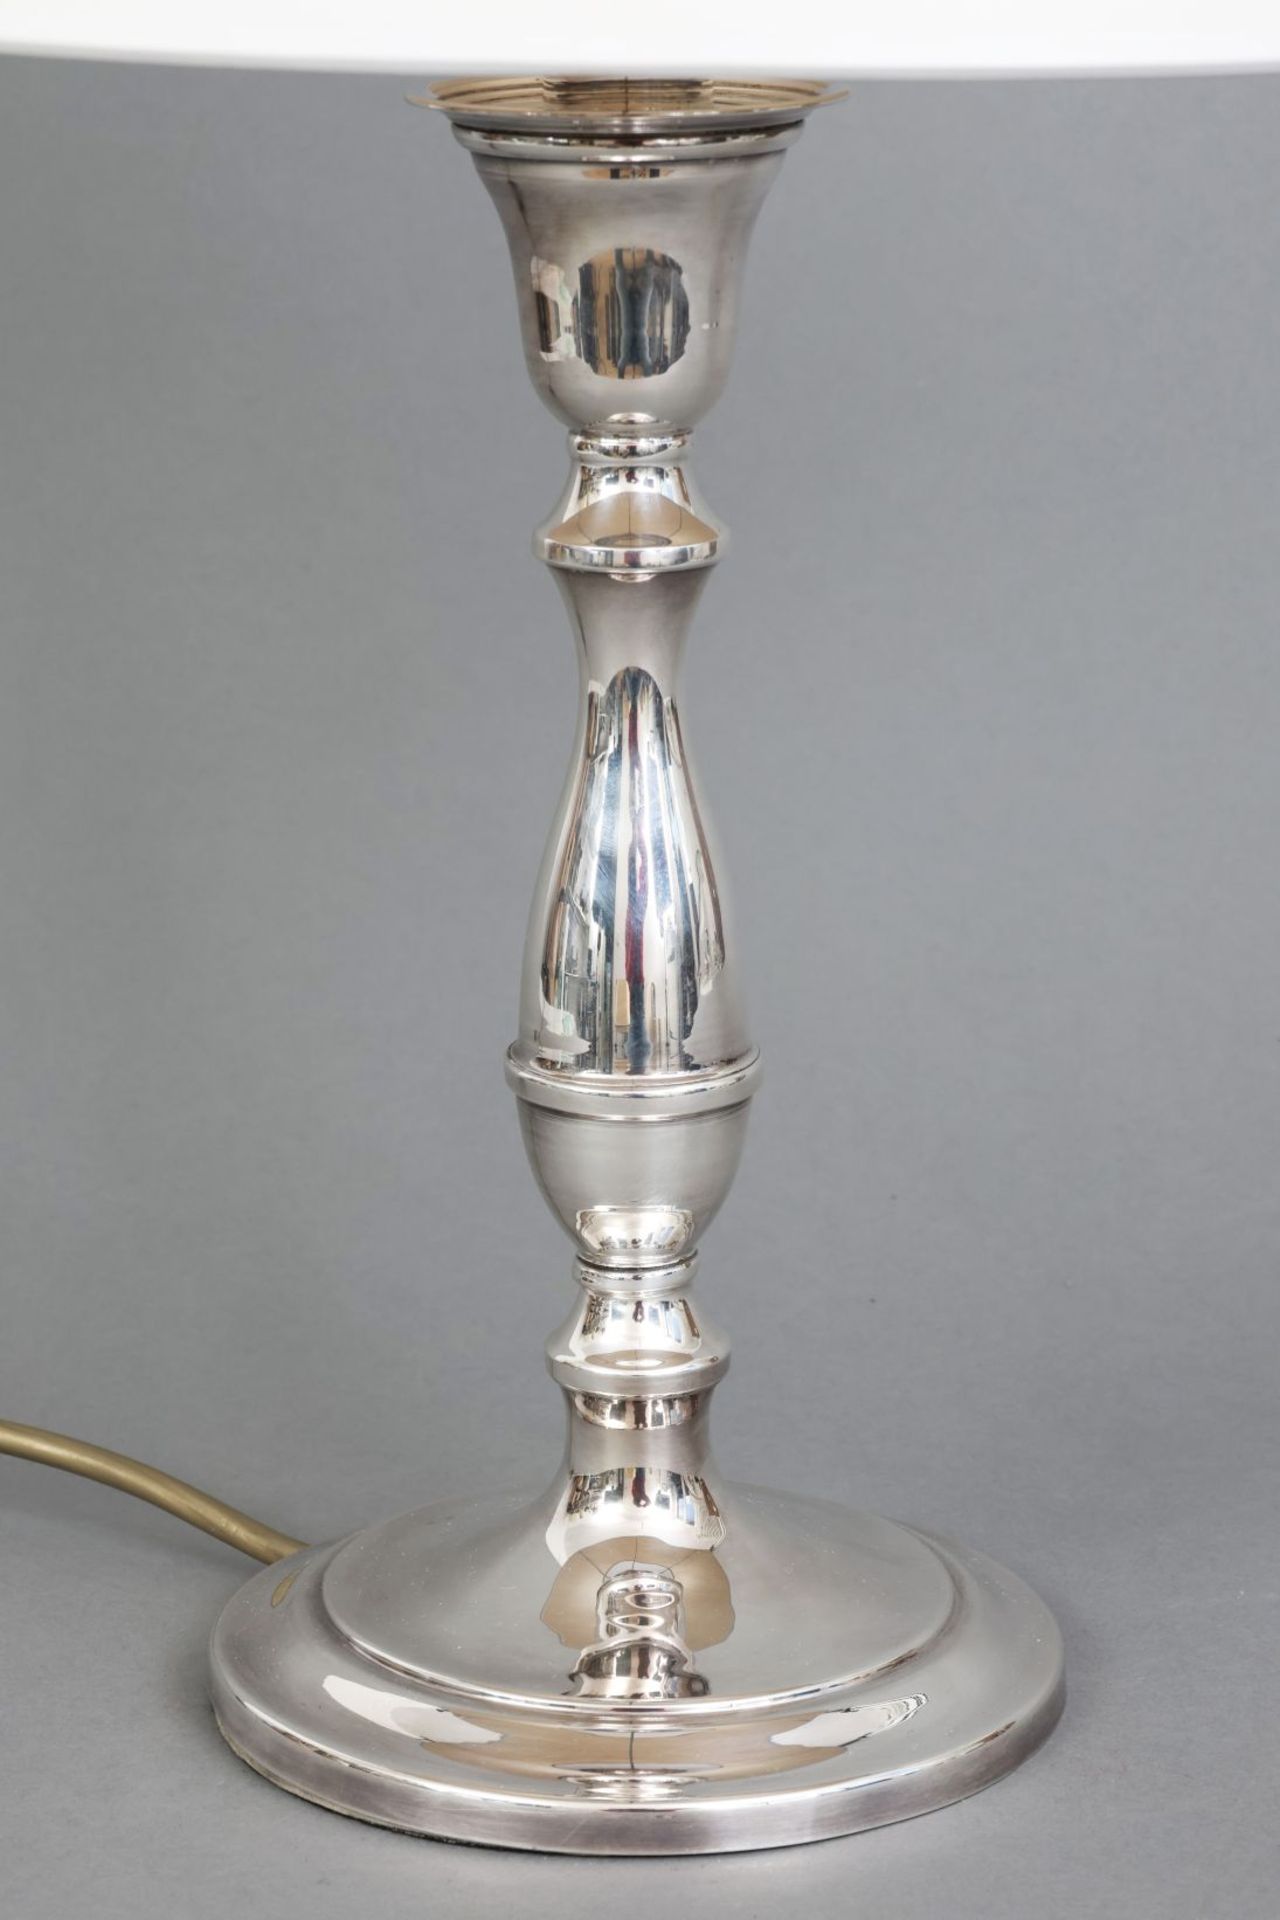 Tischlampe mit Fuß in Form eines versilberten Kerzenleuchters - Image 2 of 3